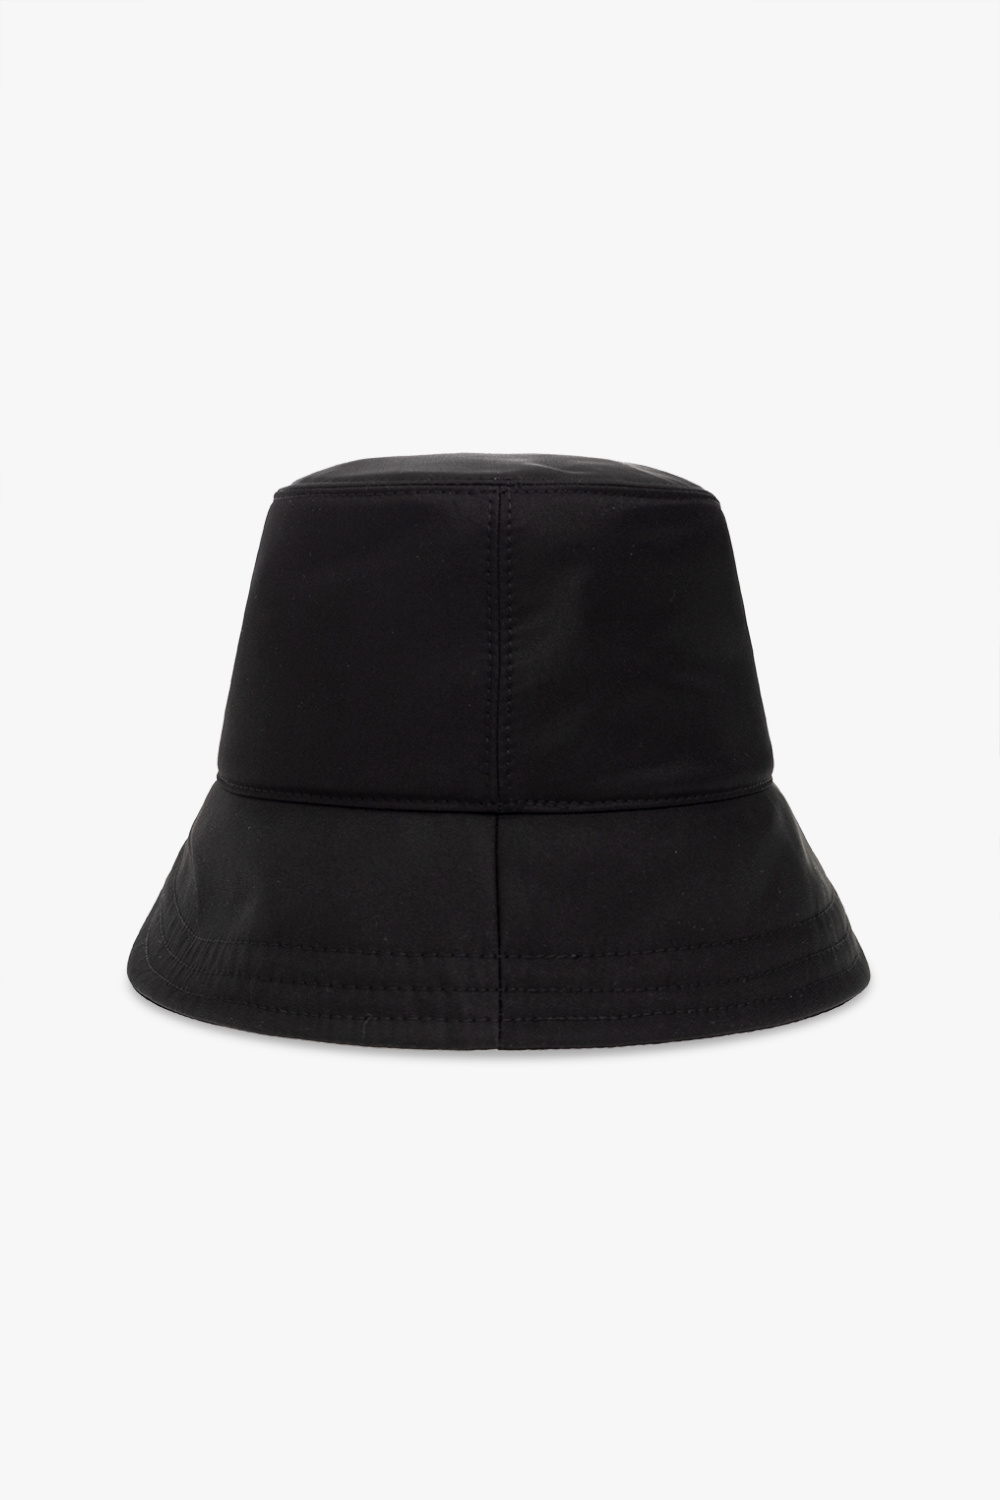 Off-White kavu strap cap black